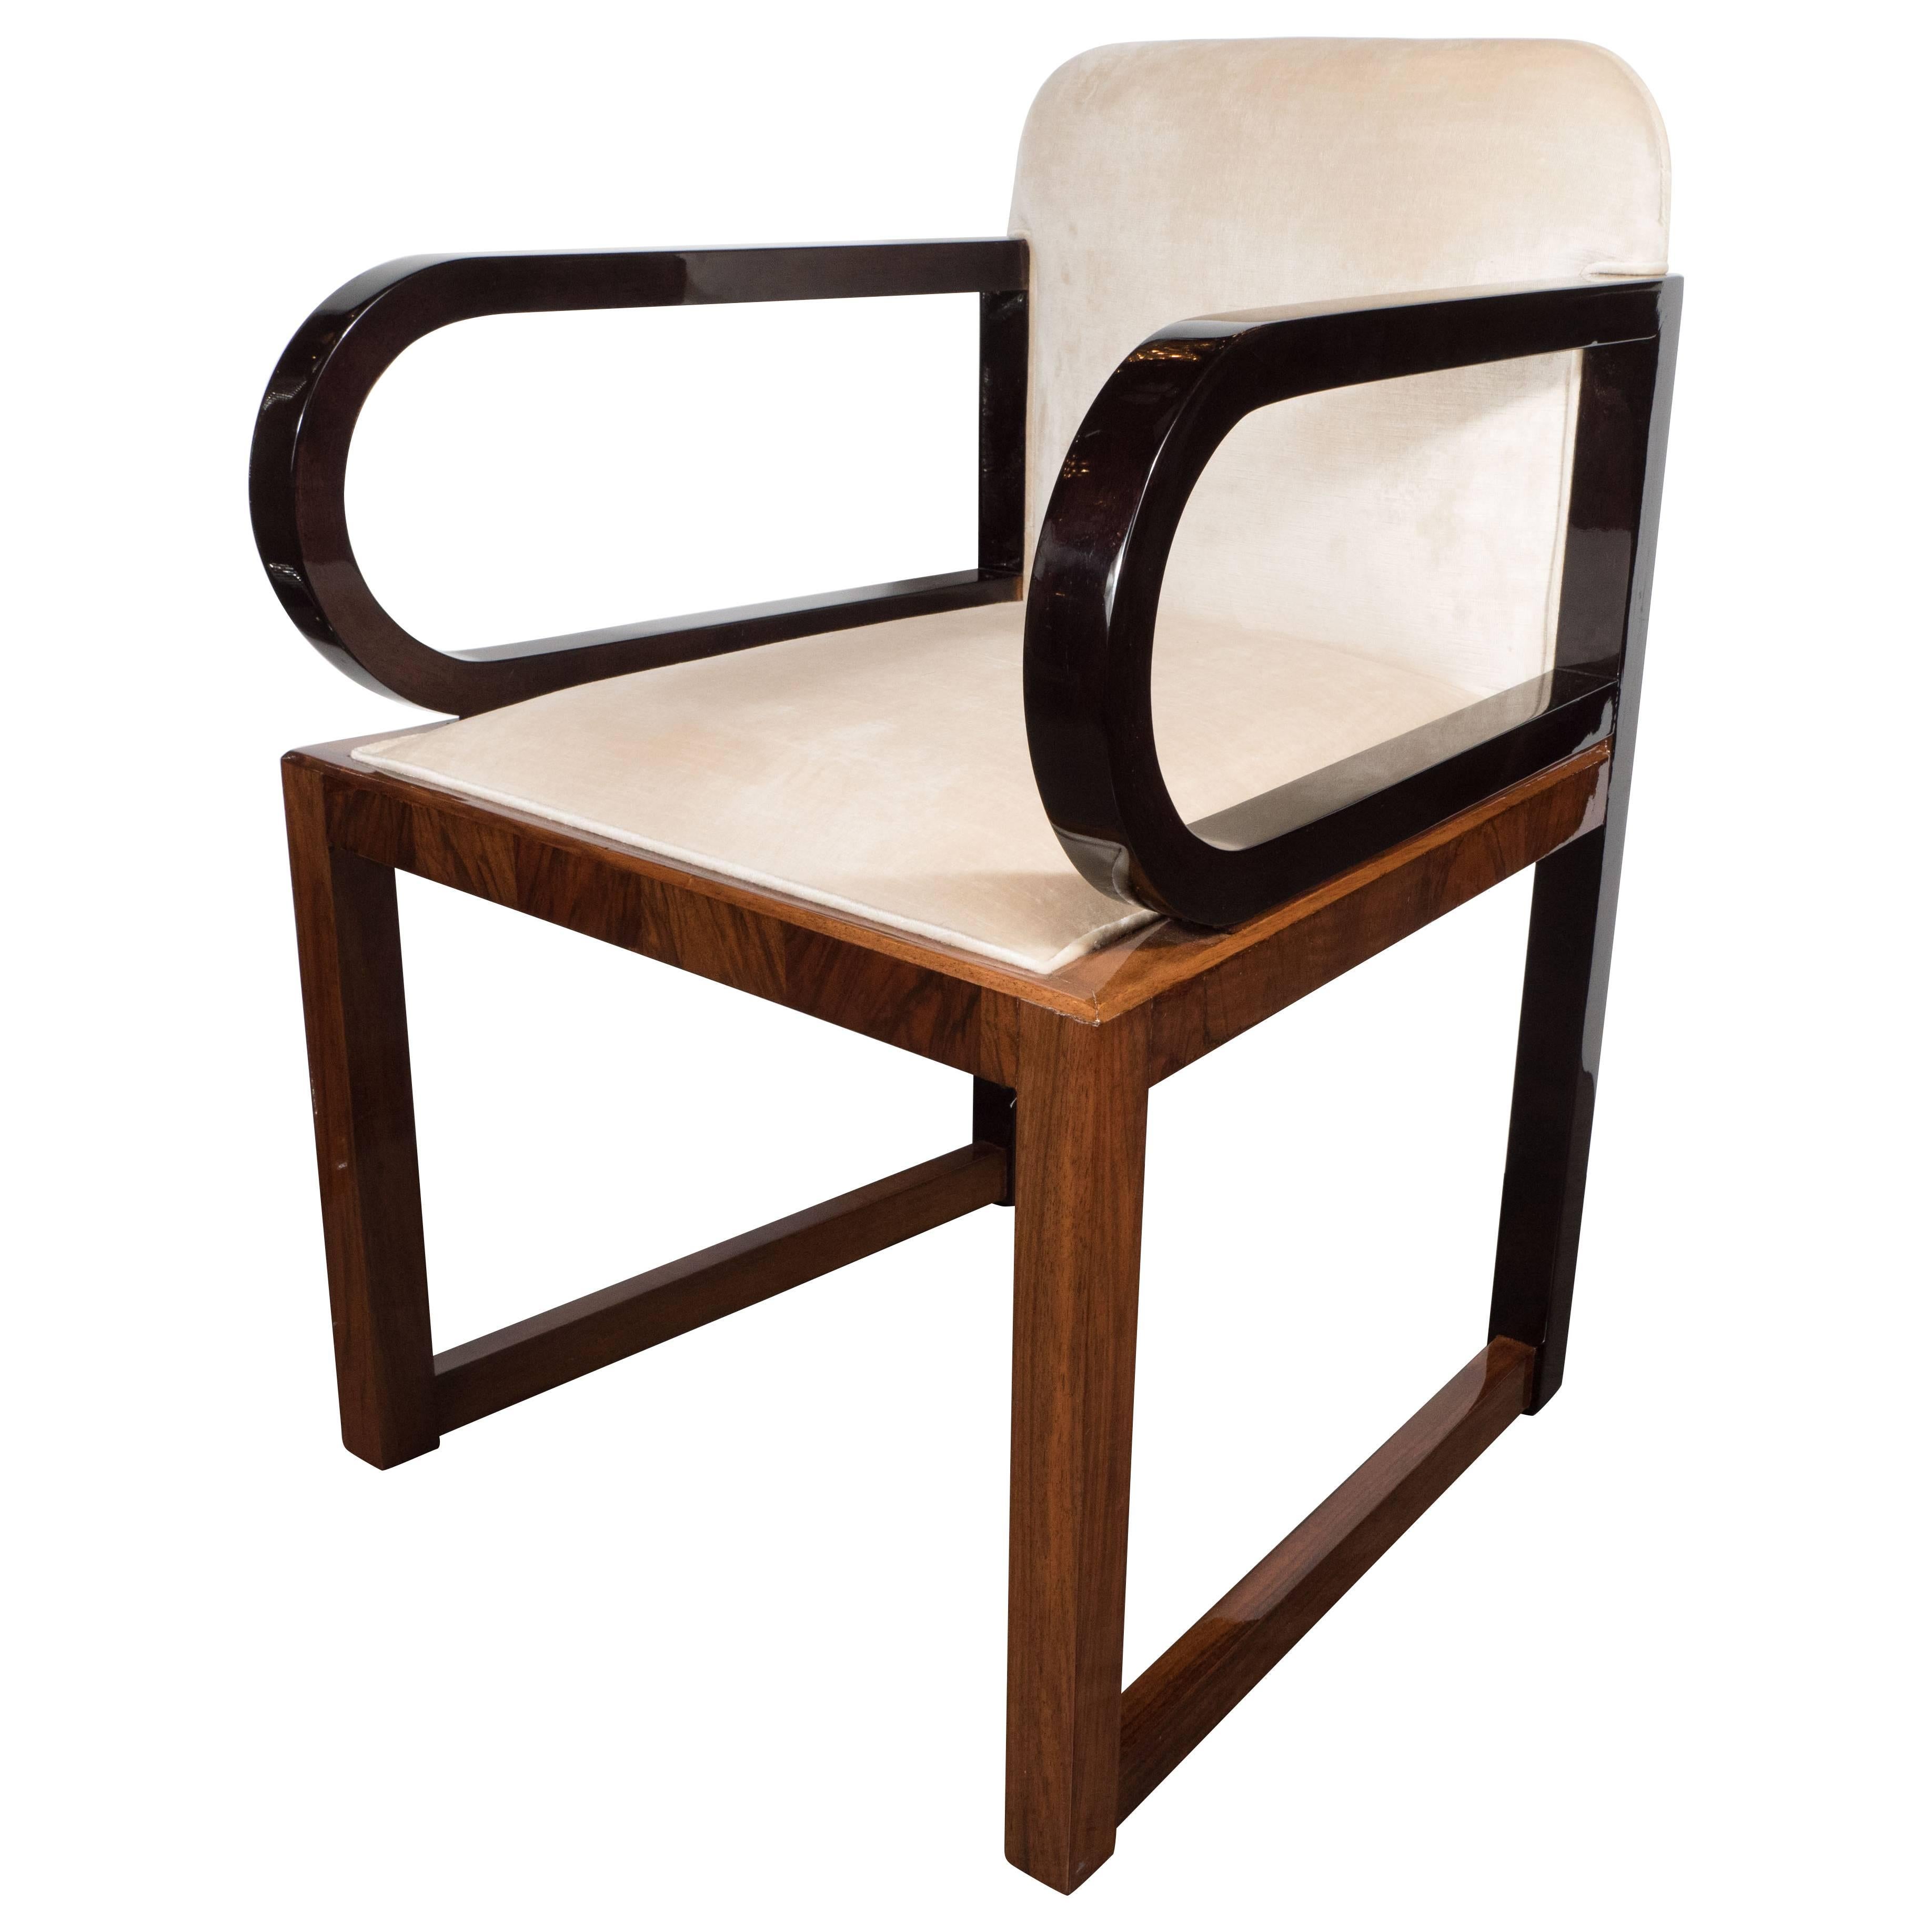 Streamlined Art Deco Polished Walnut Occasional Chair with Ebonized Walnut Arms